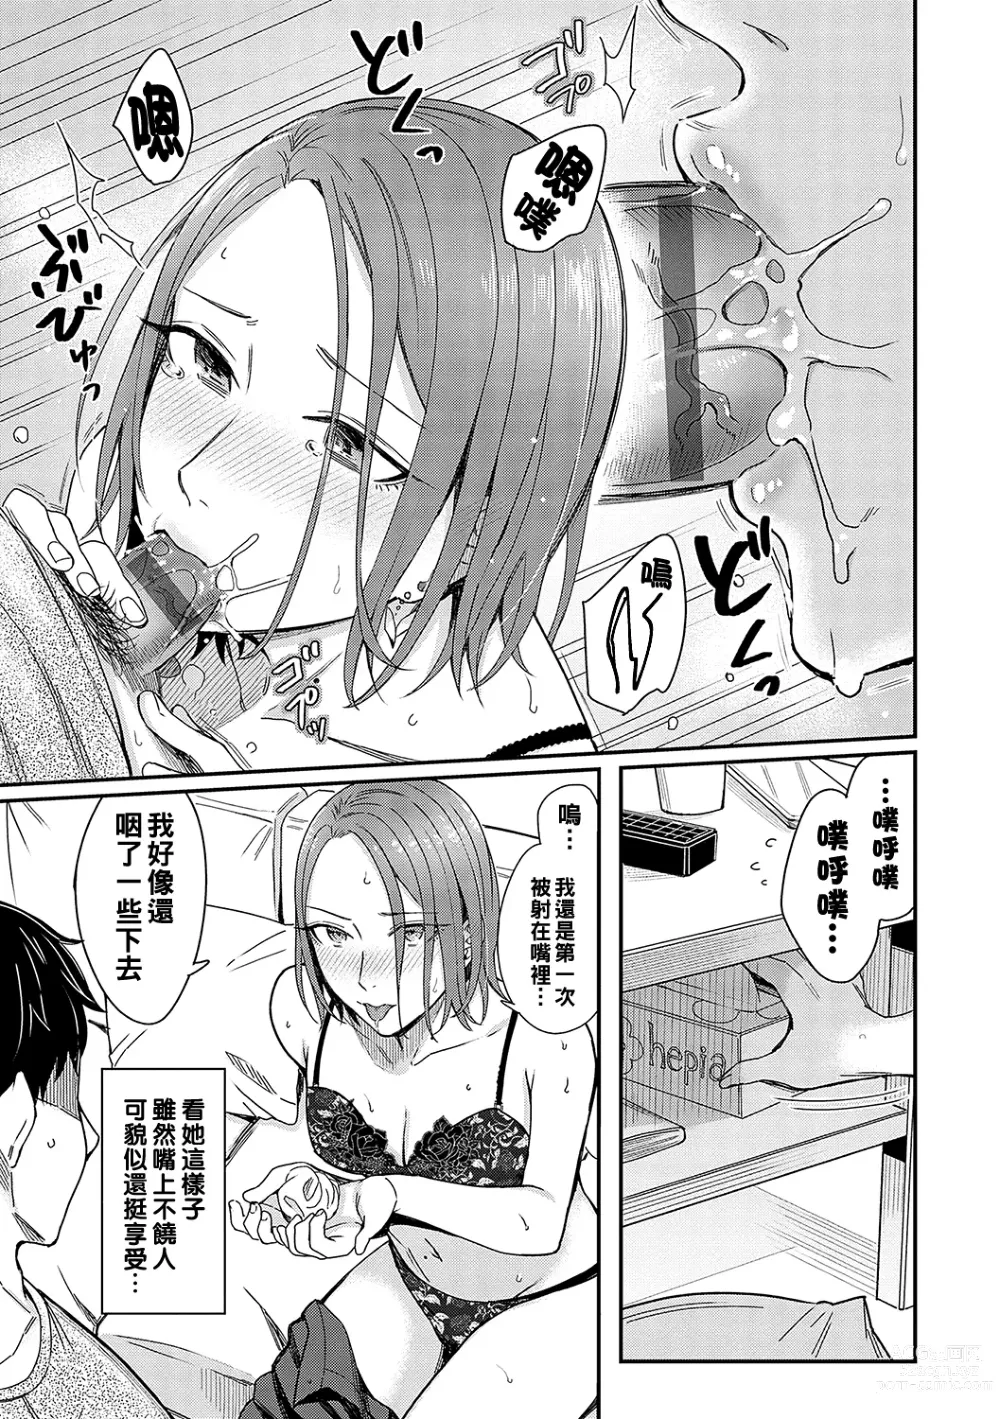 Page 19 of manga Kudaranai Renai Eiga no You ni... - Like a crappy romance movie...